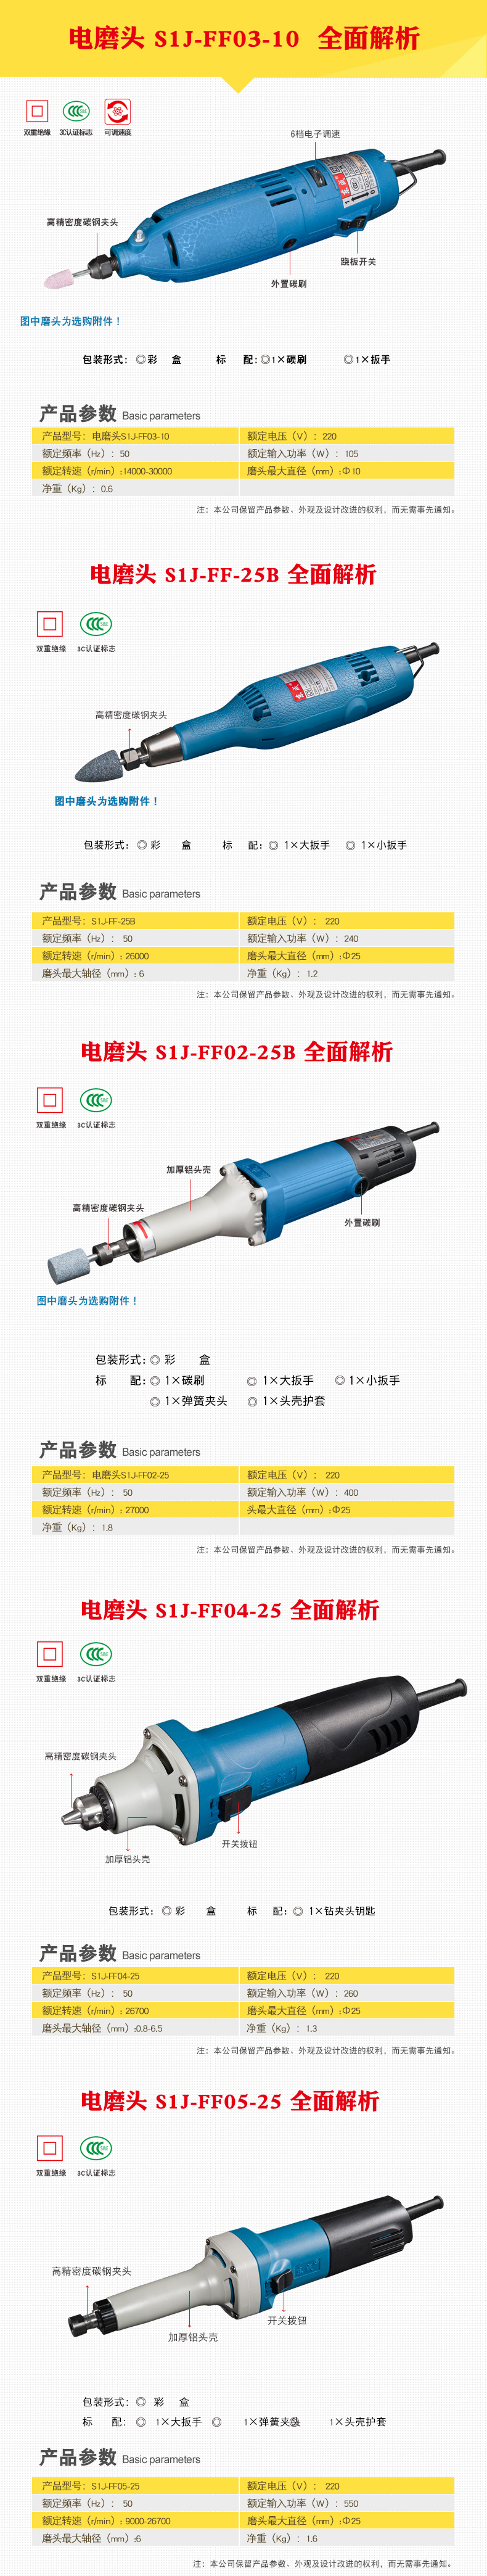 东成S1J-FF04-25型电磨机(个)